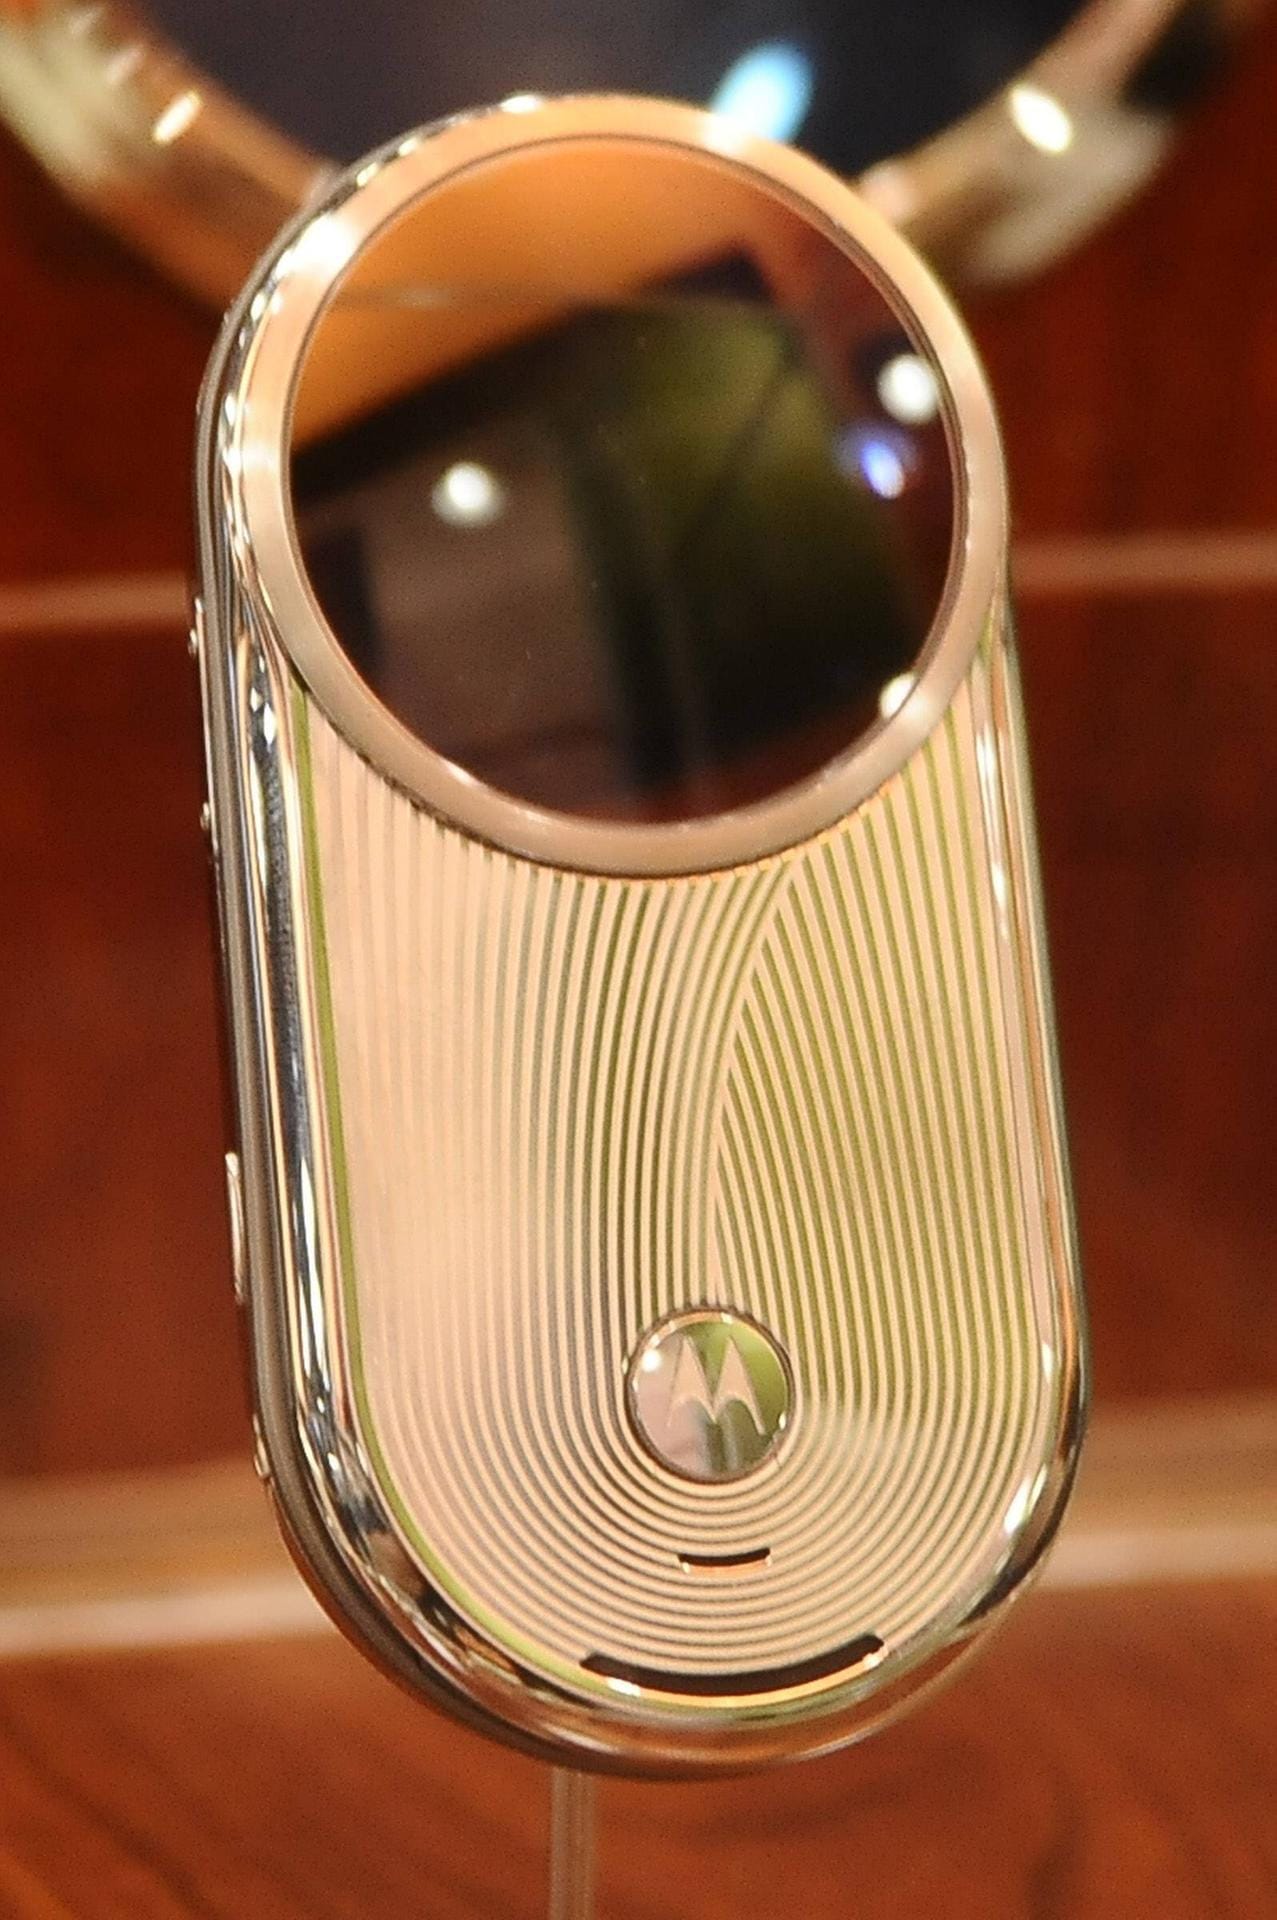 In die Kategorie "eigenwilliges Edeldesign" gehört auch das Motorola Aura V70 R1, das bei Erscheinen Anfang 2009 rund 1400 Euro kostete. Derzeit ist es zwischen etwa 1000 und 2000 Euro zu haben, die limitierte Gold-Edition erzielt sogar über 3000 Euro.